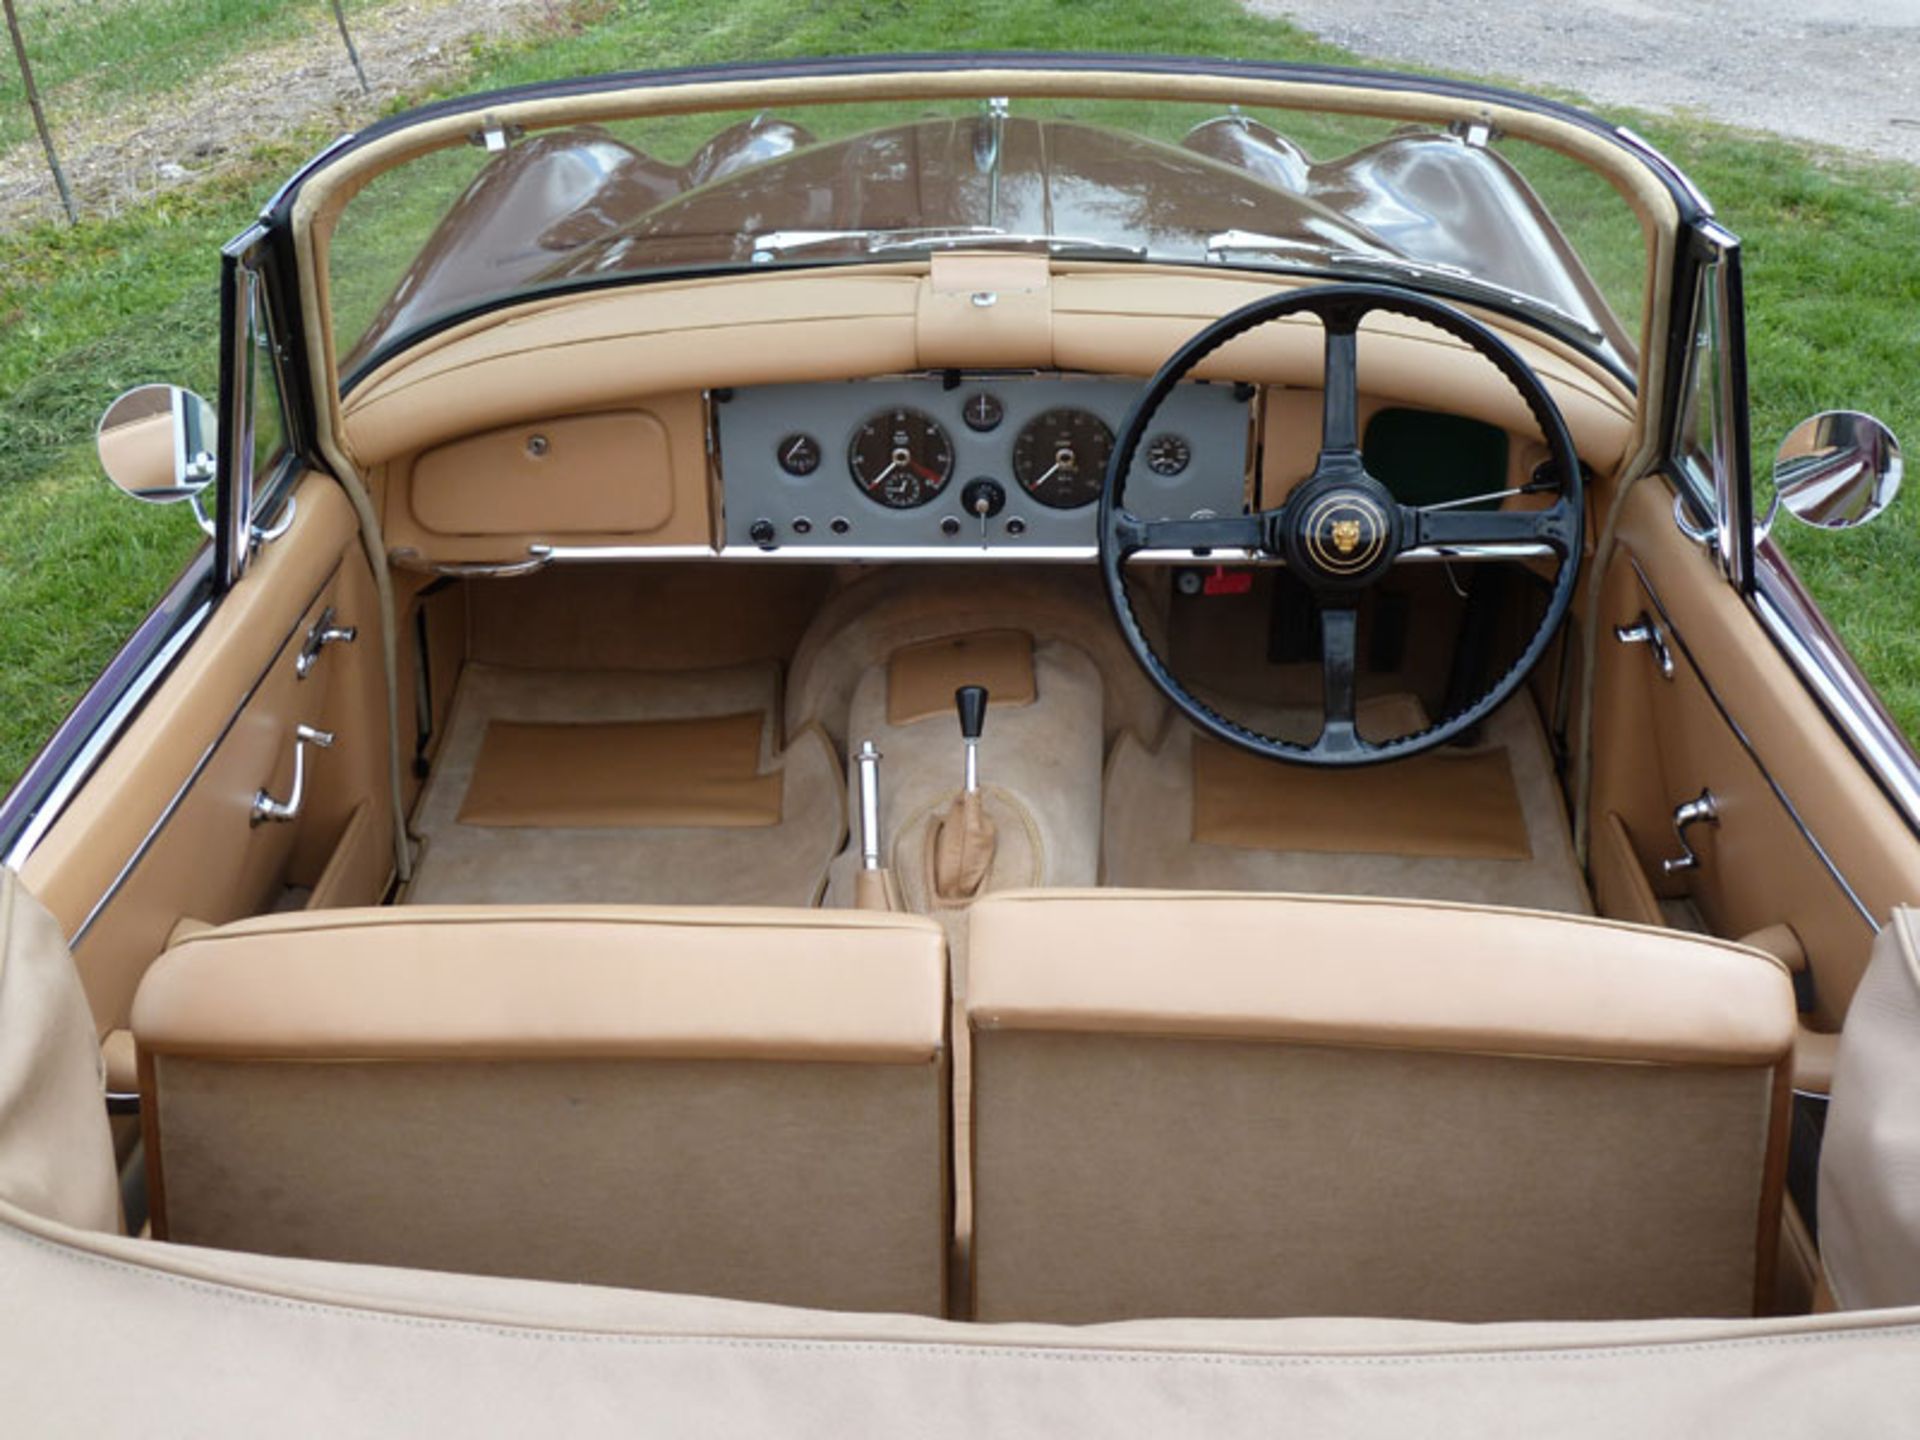 1959 Jaguar XK150 3.4 Litre 'S' Drophead Coupe - Image 7 of 15